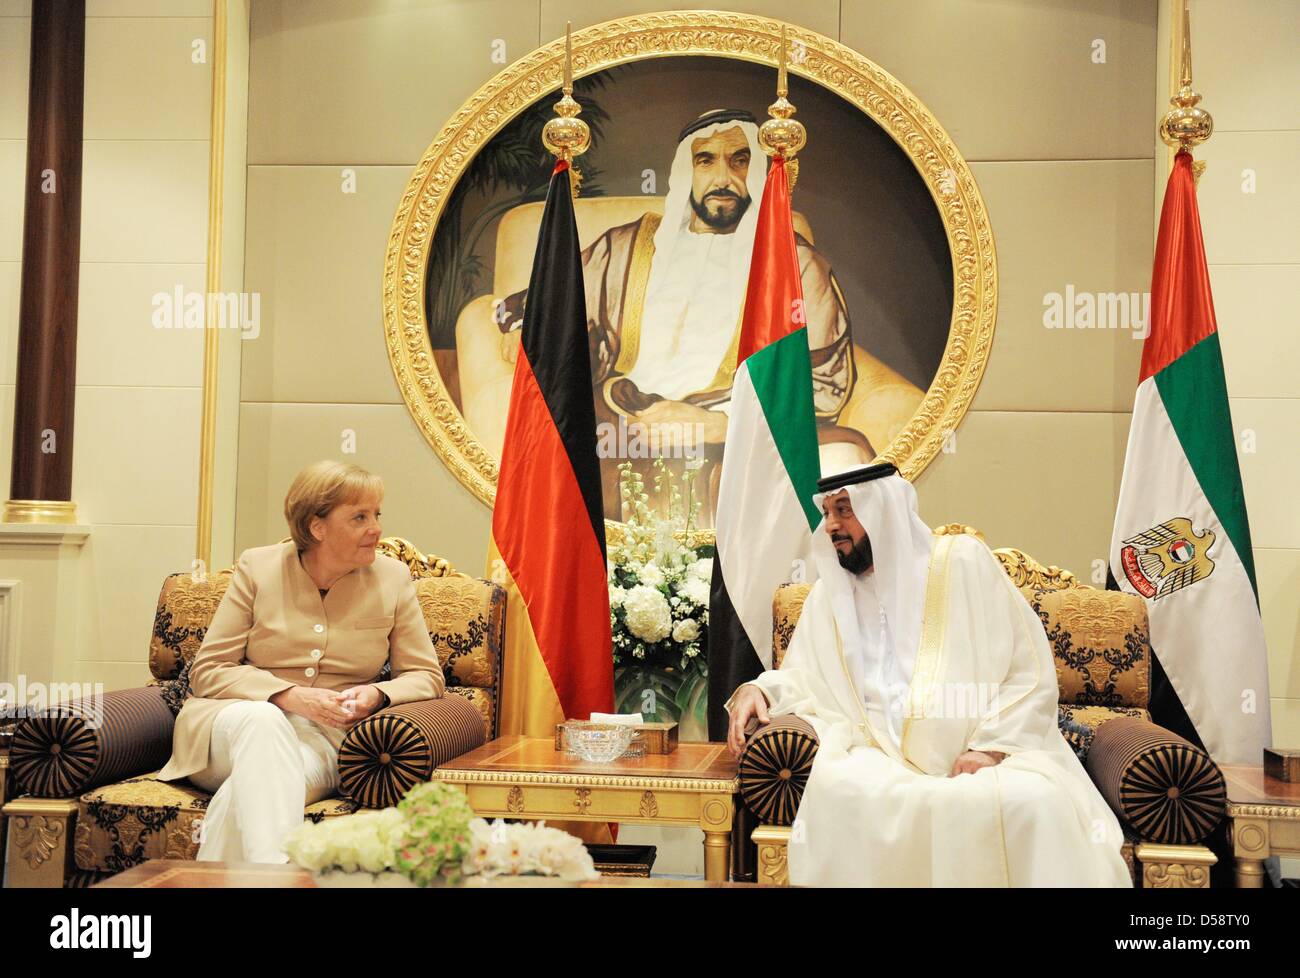 La chancelière allemande Angela Merkel s'entretient avec le président des EAU, Cheikh Khalifa bin Zayed Al Nahyan, Président de l'Al Mushrif's Palace à Abu Dhabi, Emirats arabes unis (EAU), 25 mai 2010. Merkel se rendra dans quatre des six pays du Conseil de coopération du Golfe jusqu'au 27 mai 2010 pour améliorer les liens économiques et politiques. Poto : RAINER JENSEN Banque D'Images